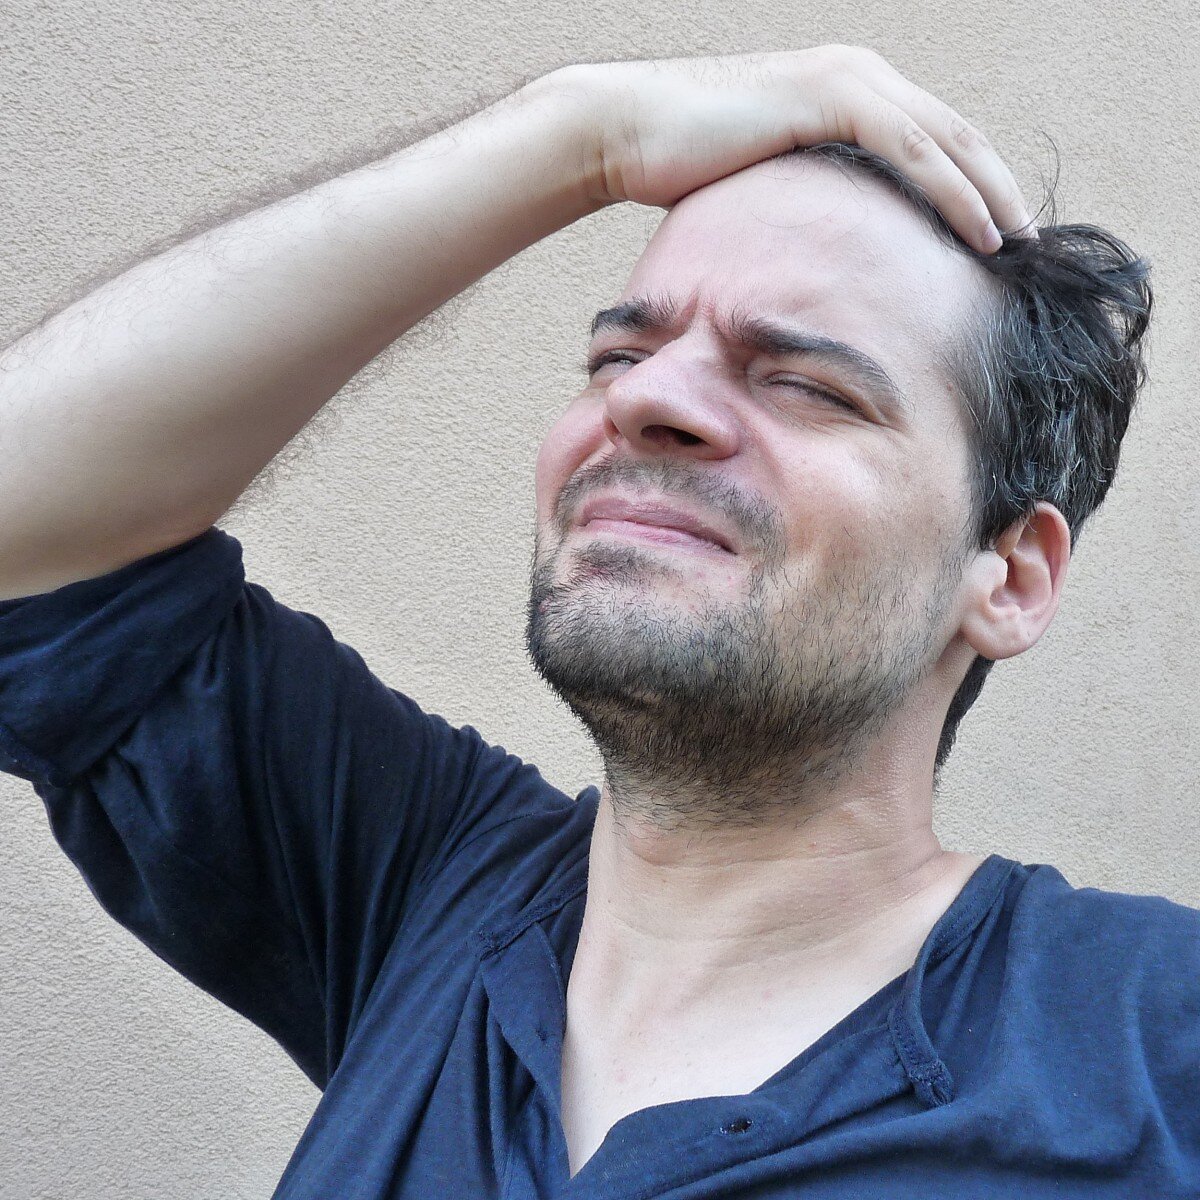 Ник нервис. Стресс борода. 46 Летний мужчина фото с головной сильной болью.